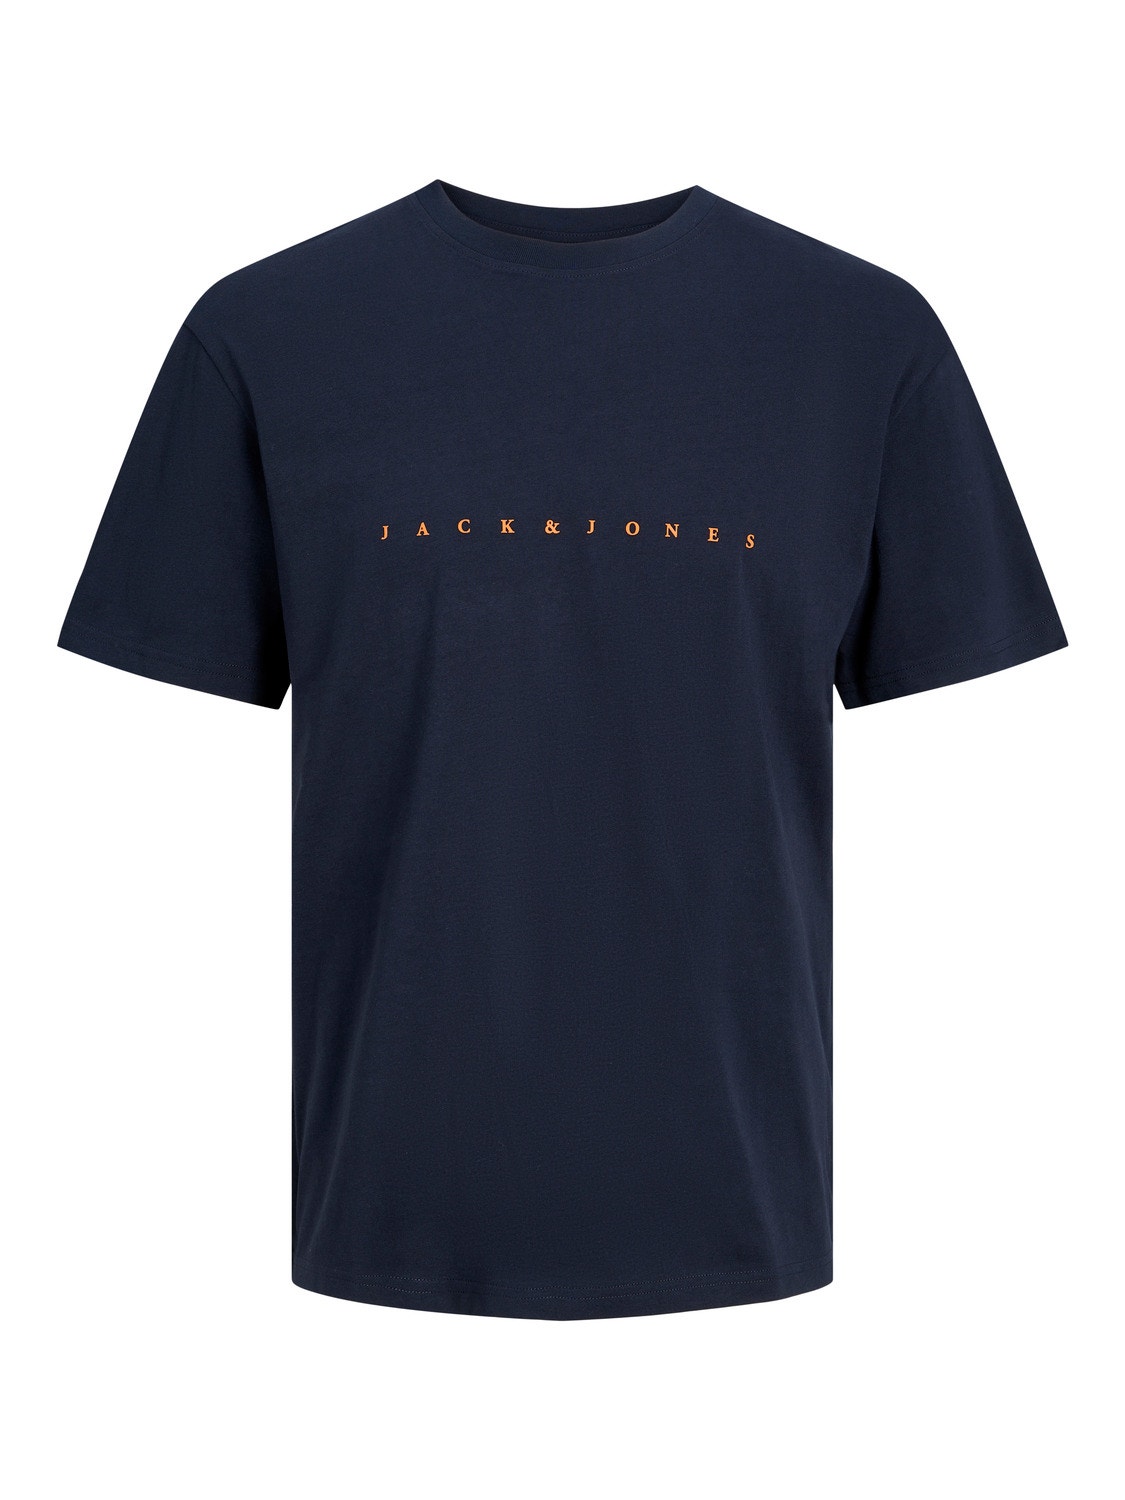 Jack & Jones Logo Crew neck T-shirt -Dark Navy - 12234746